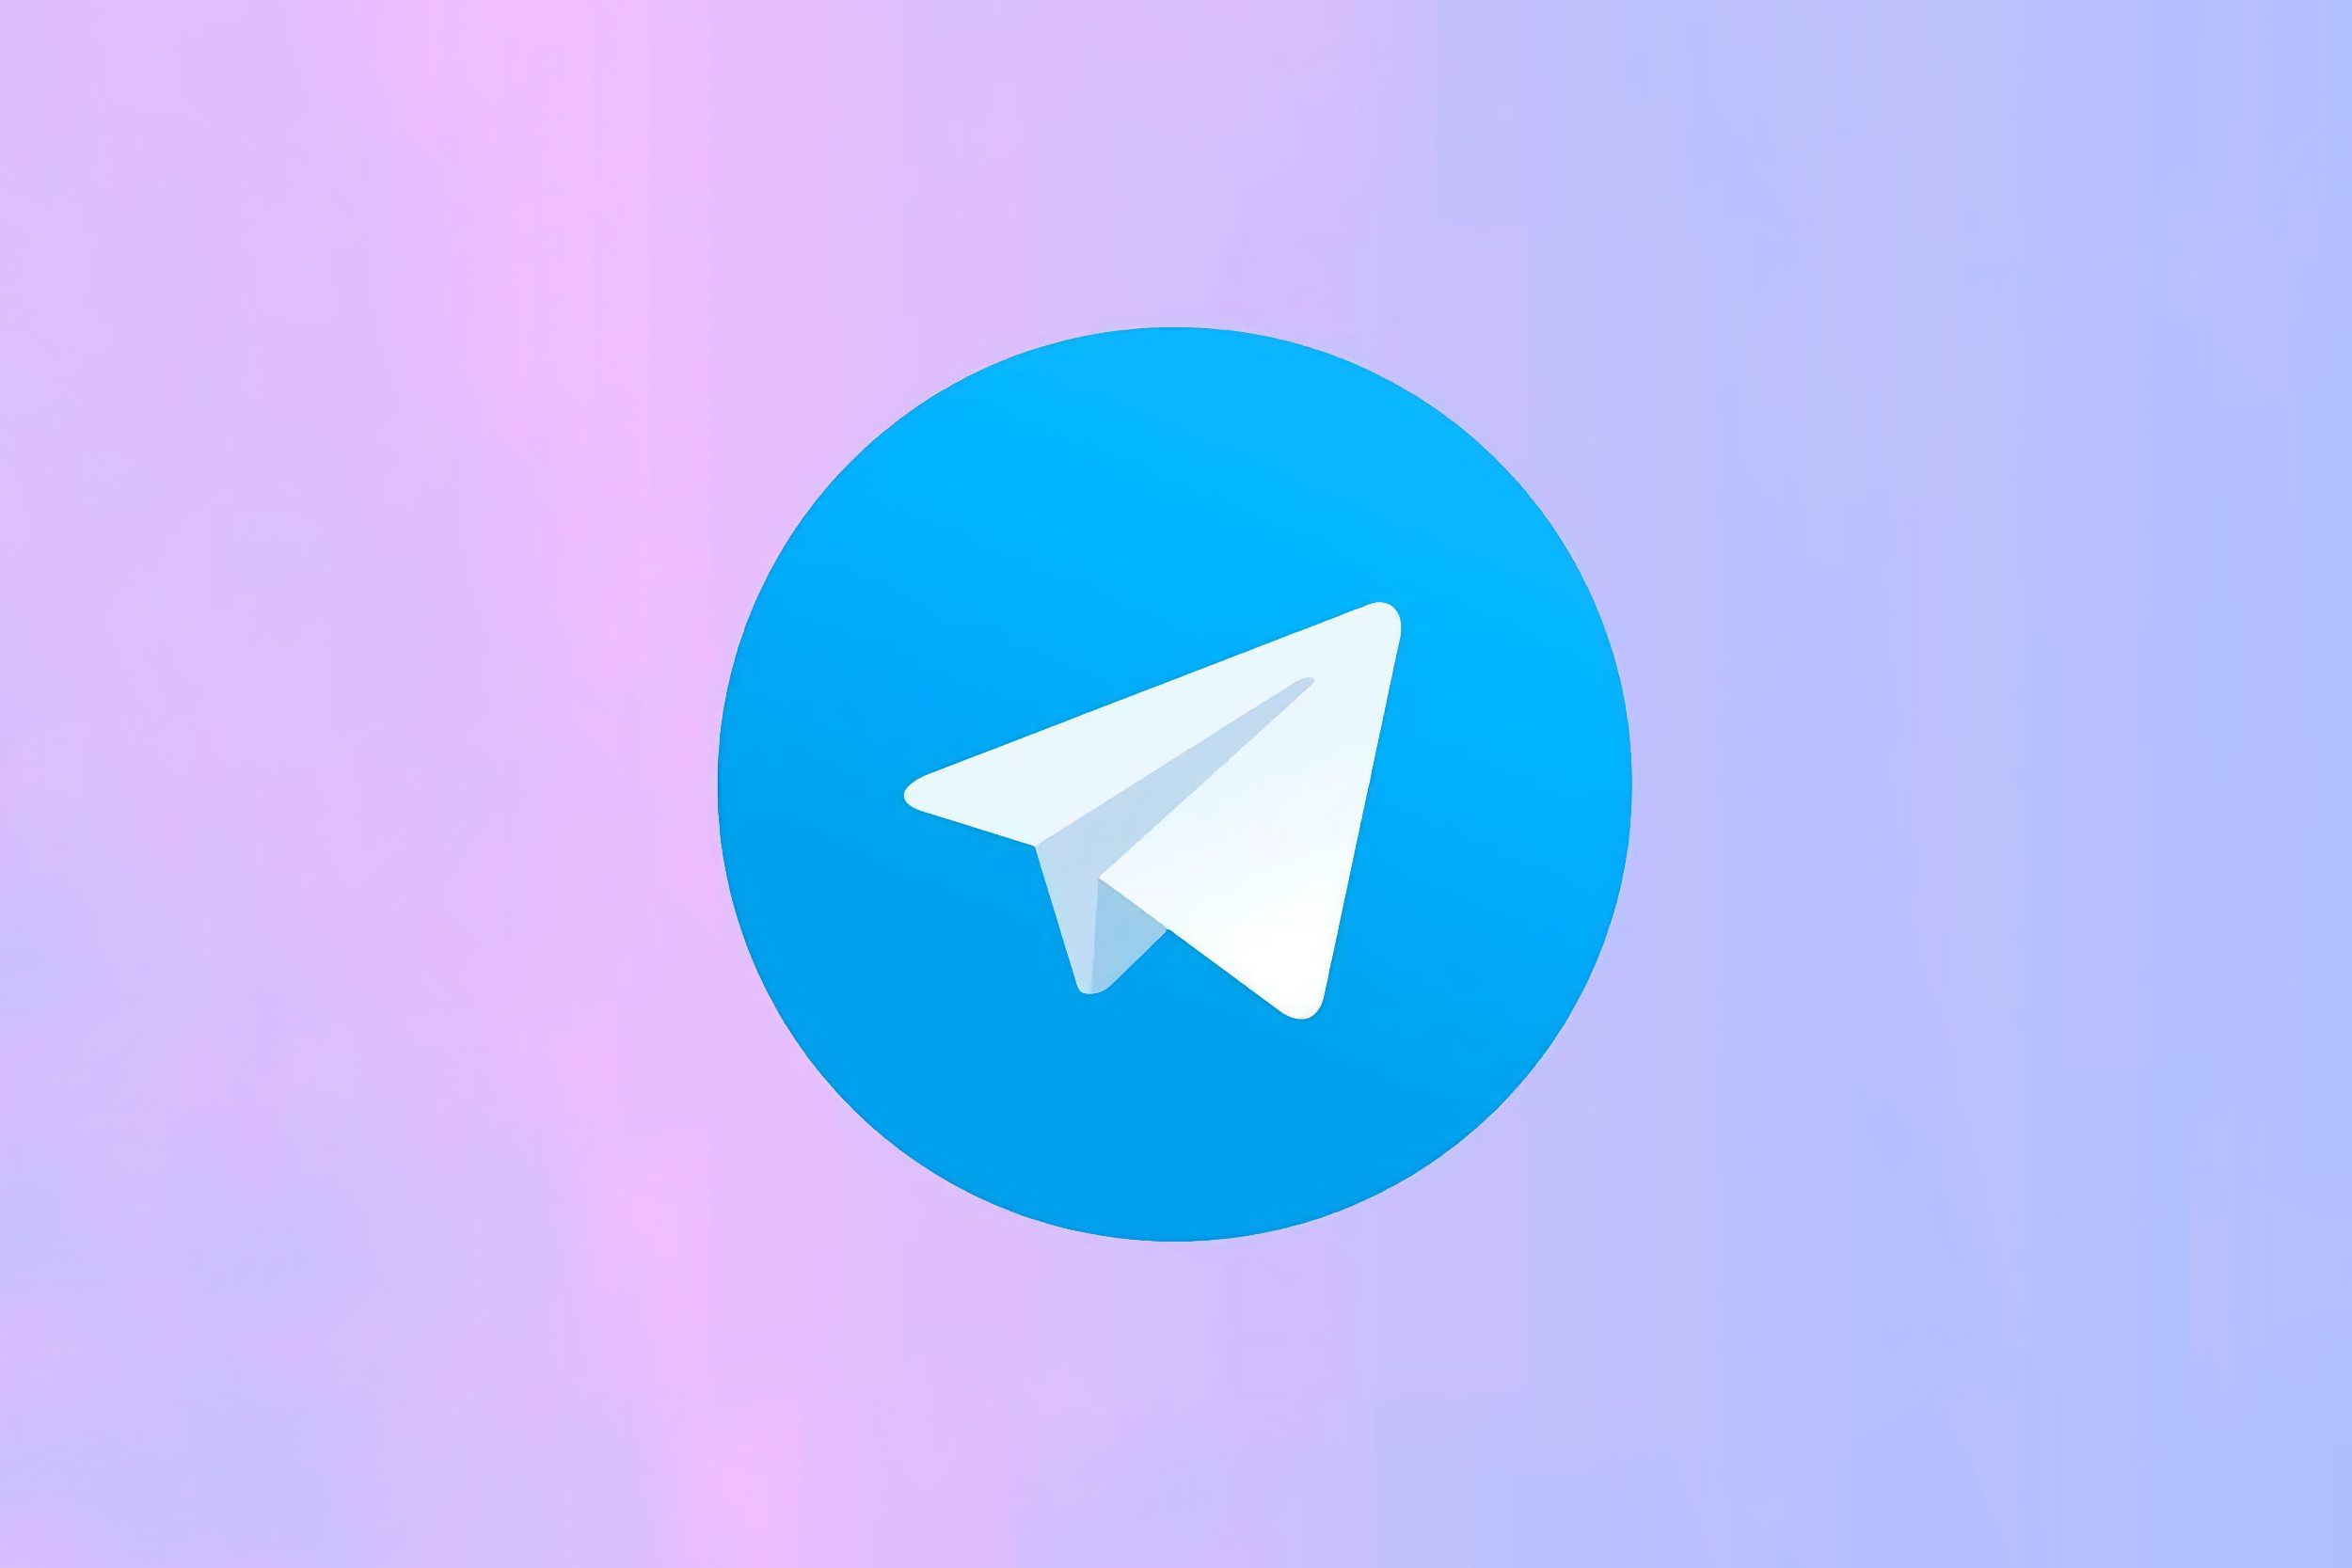 Telegram avrà presto un abbonamento Premium